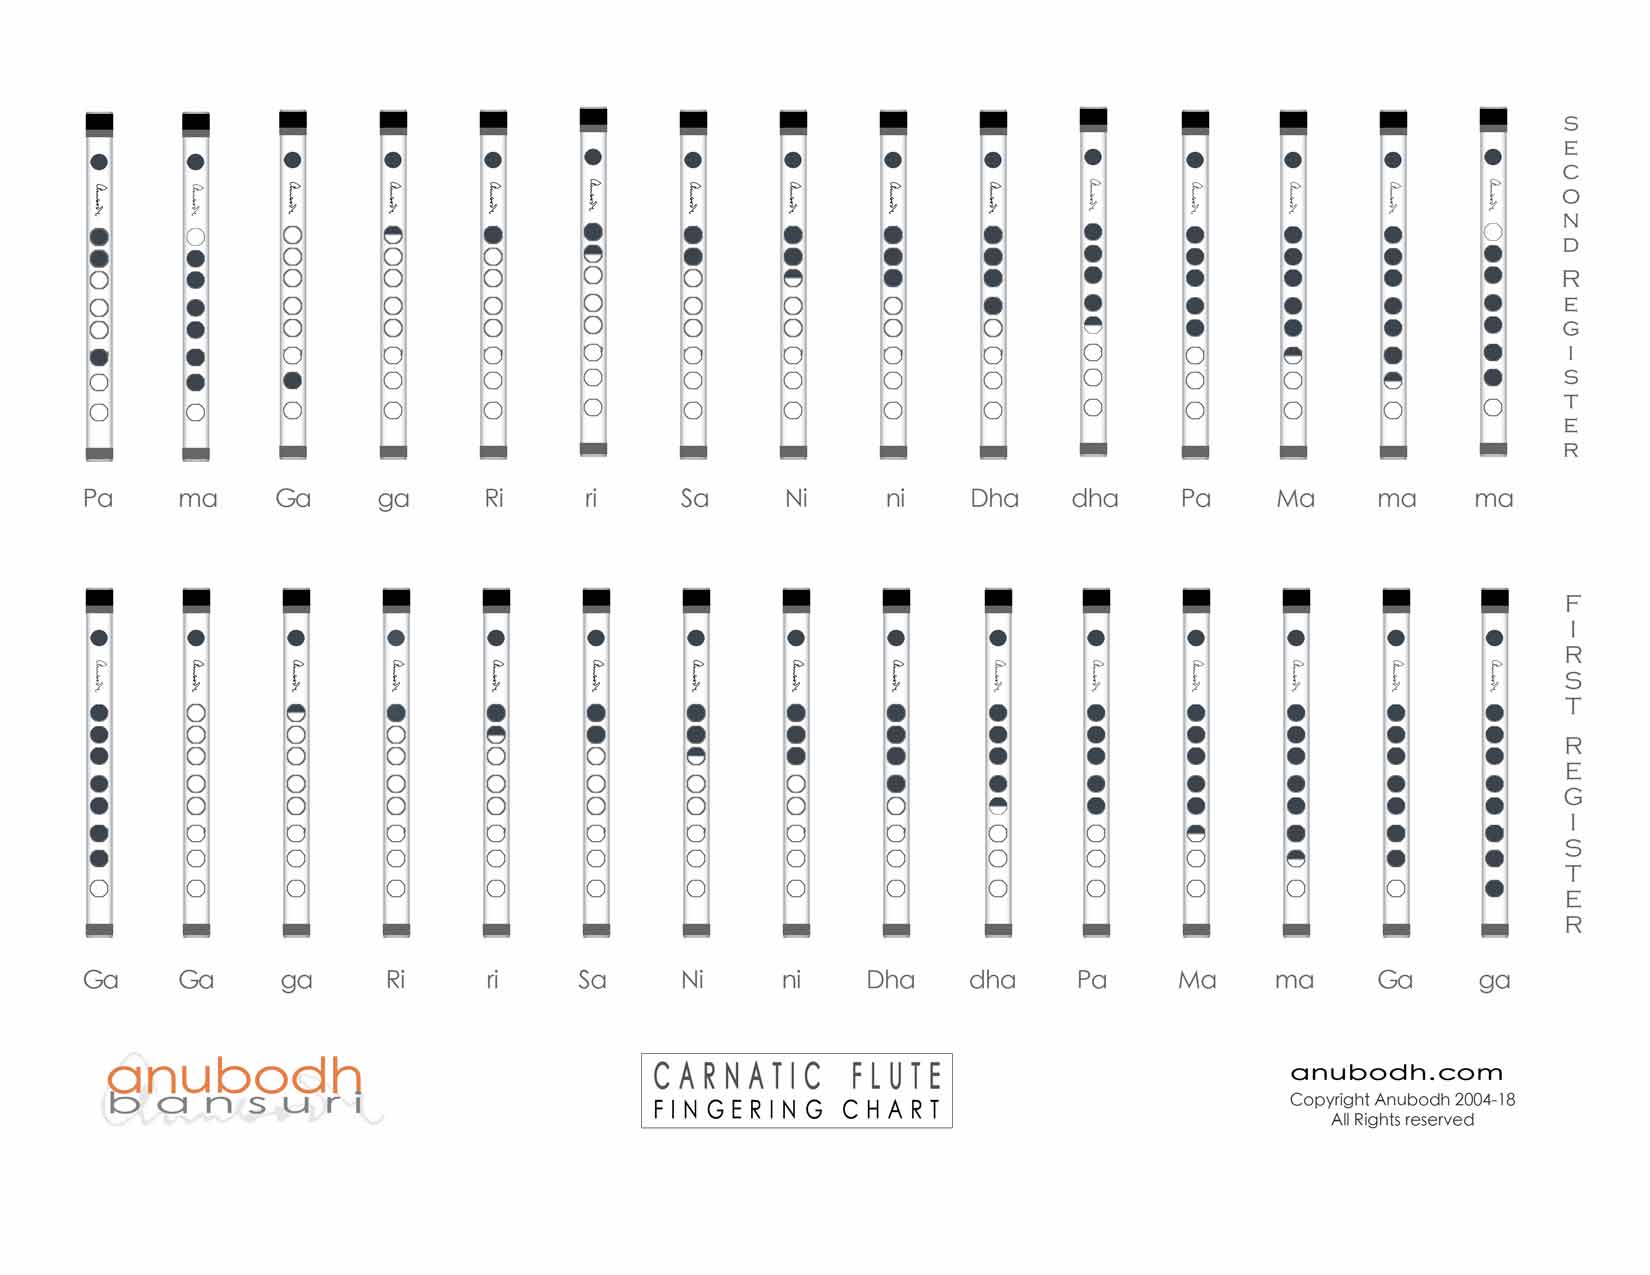 Carnatic flute fingering chart